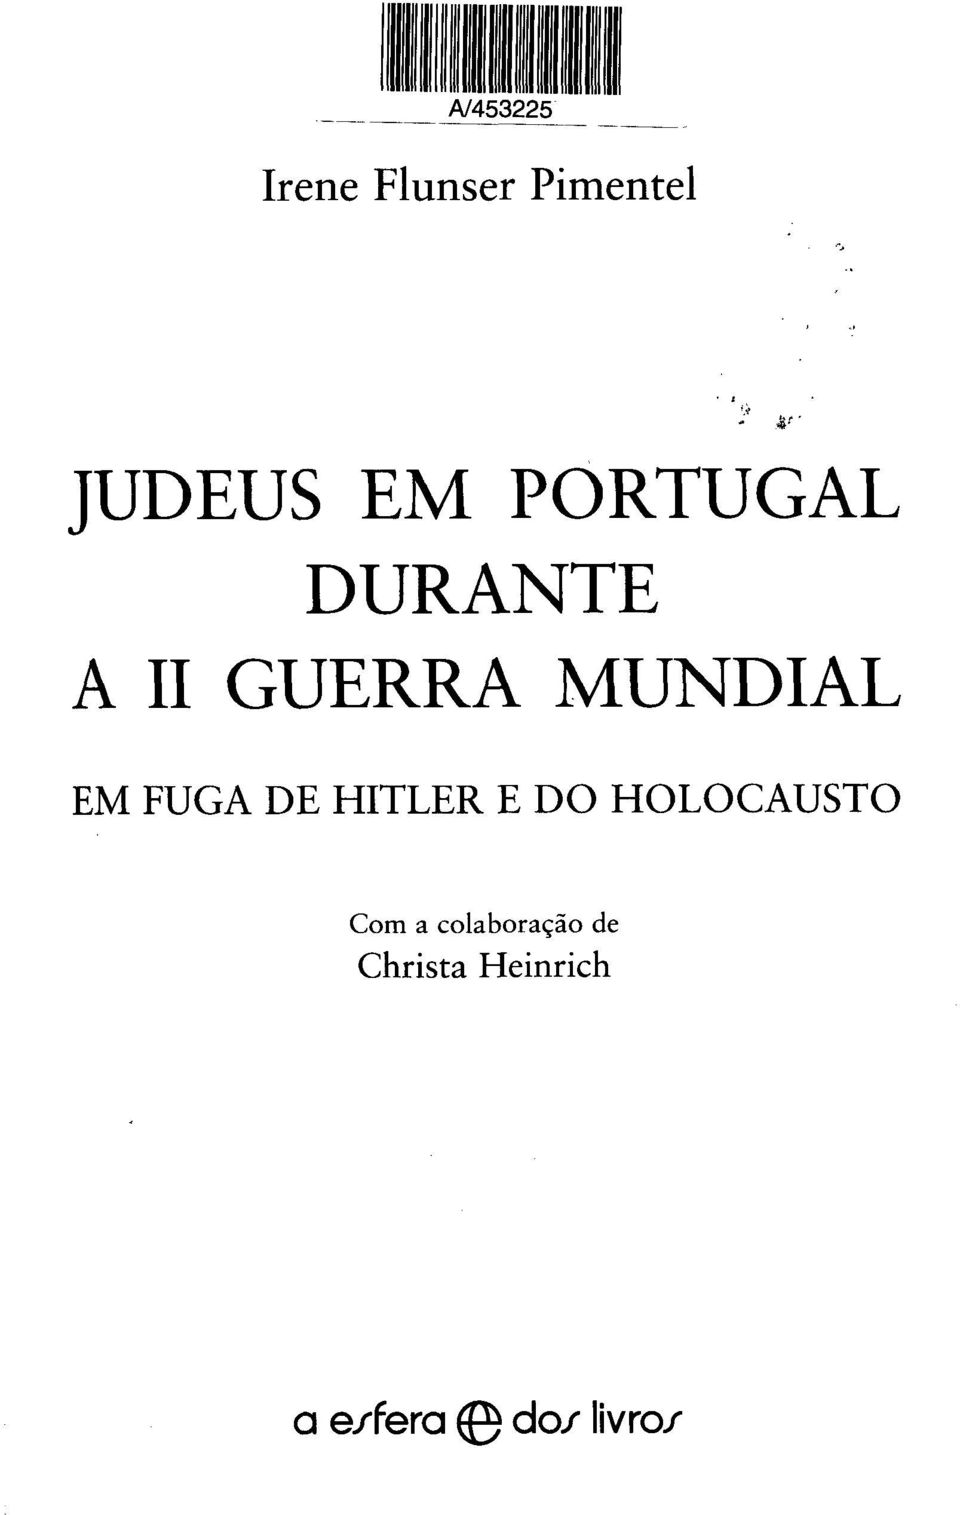 FUGA DE HITLER E DO HOLOCAUSTO Com a